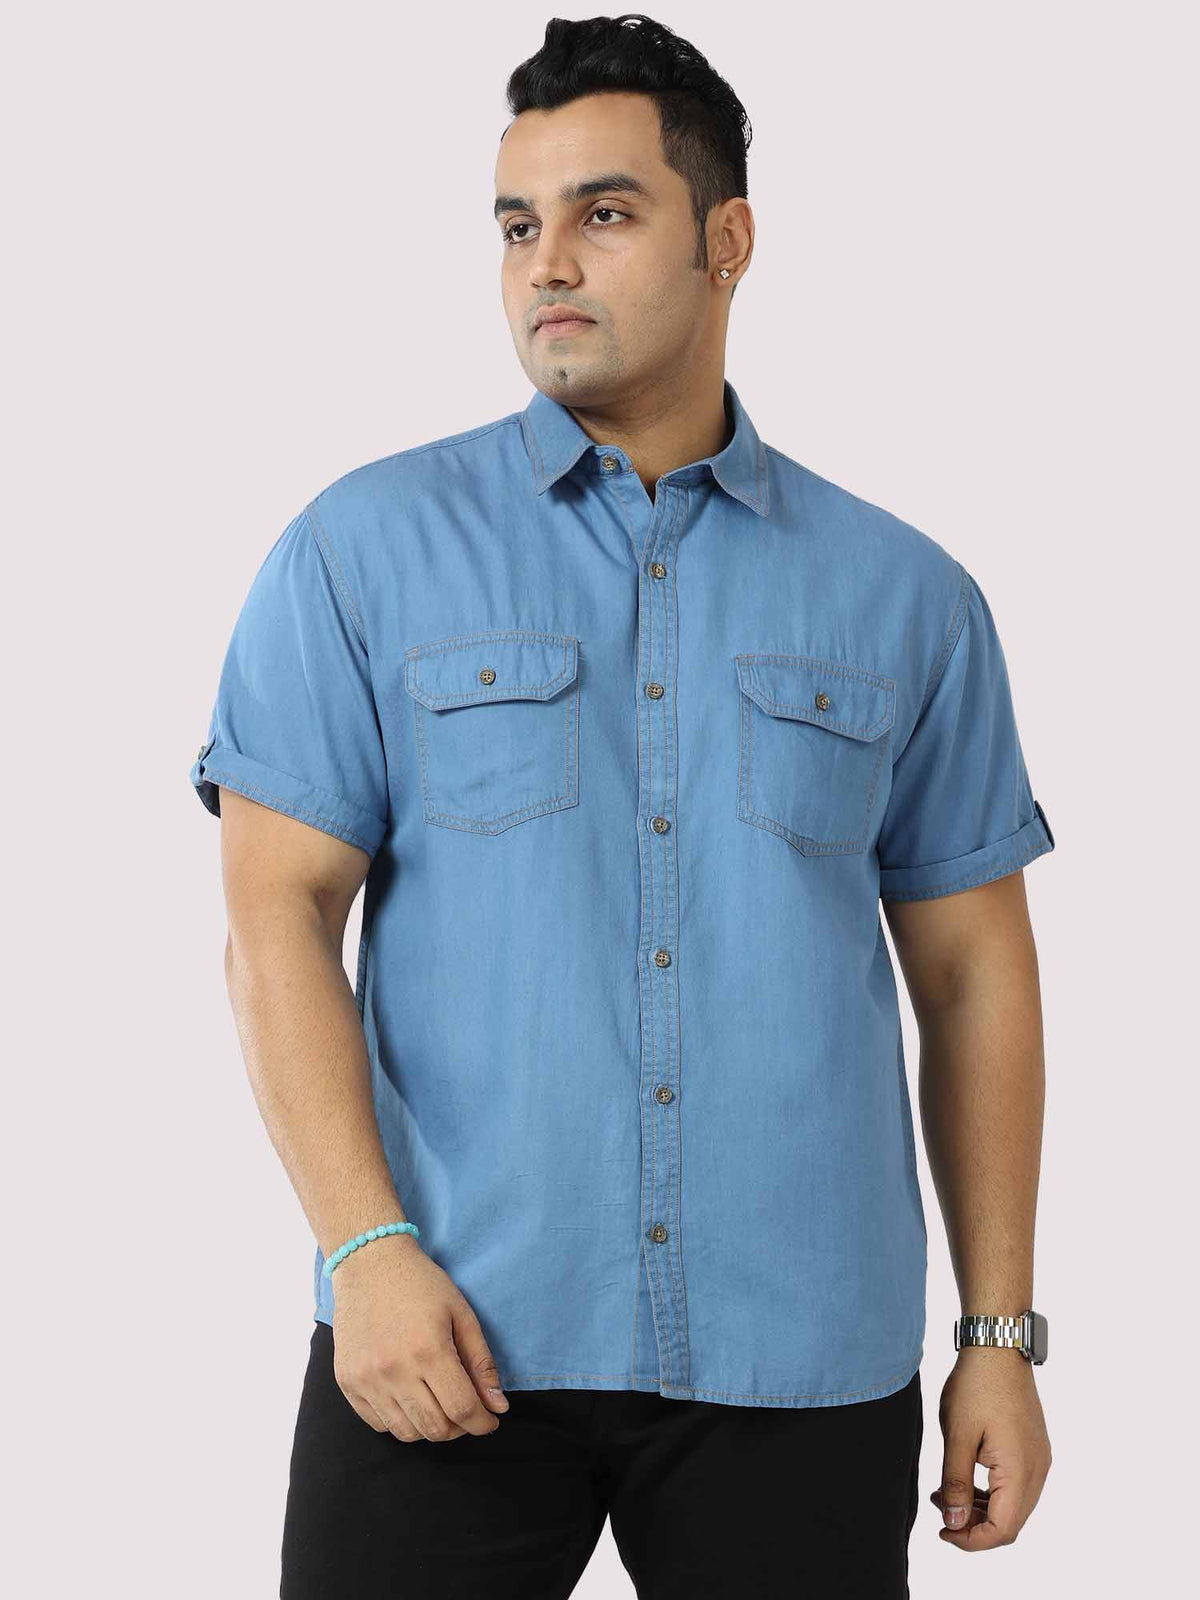 Blue Denim Double Pocket Half Sleeve Shirt Men's Plus Size